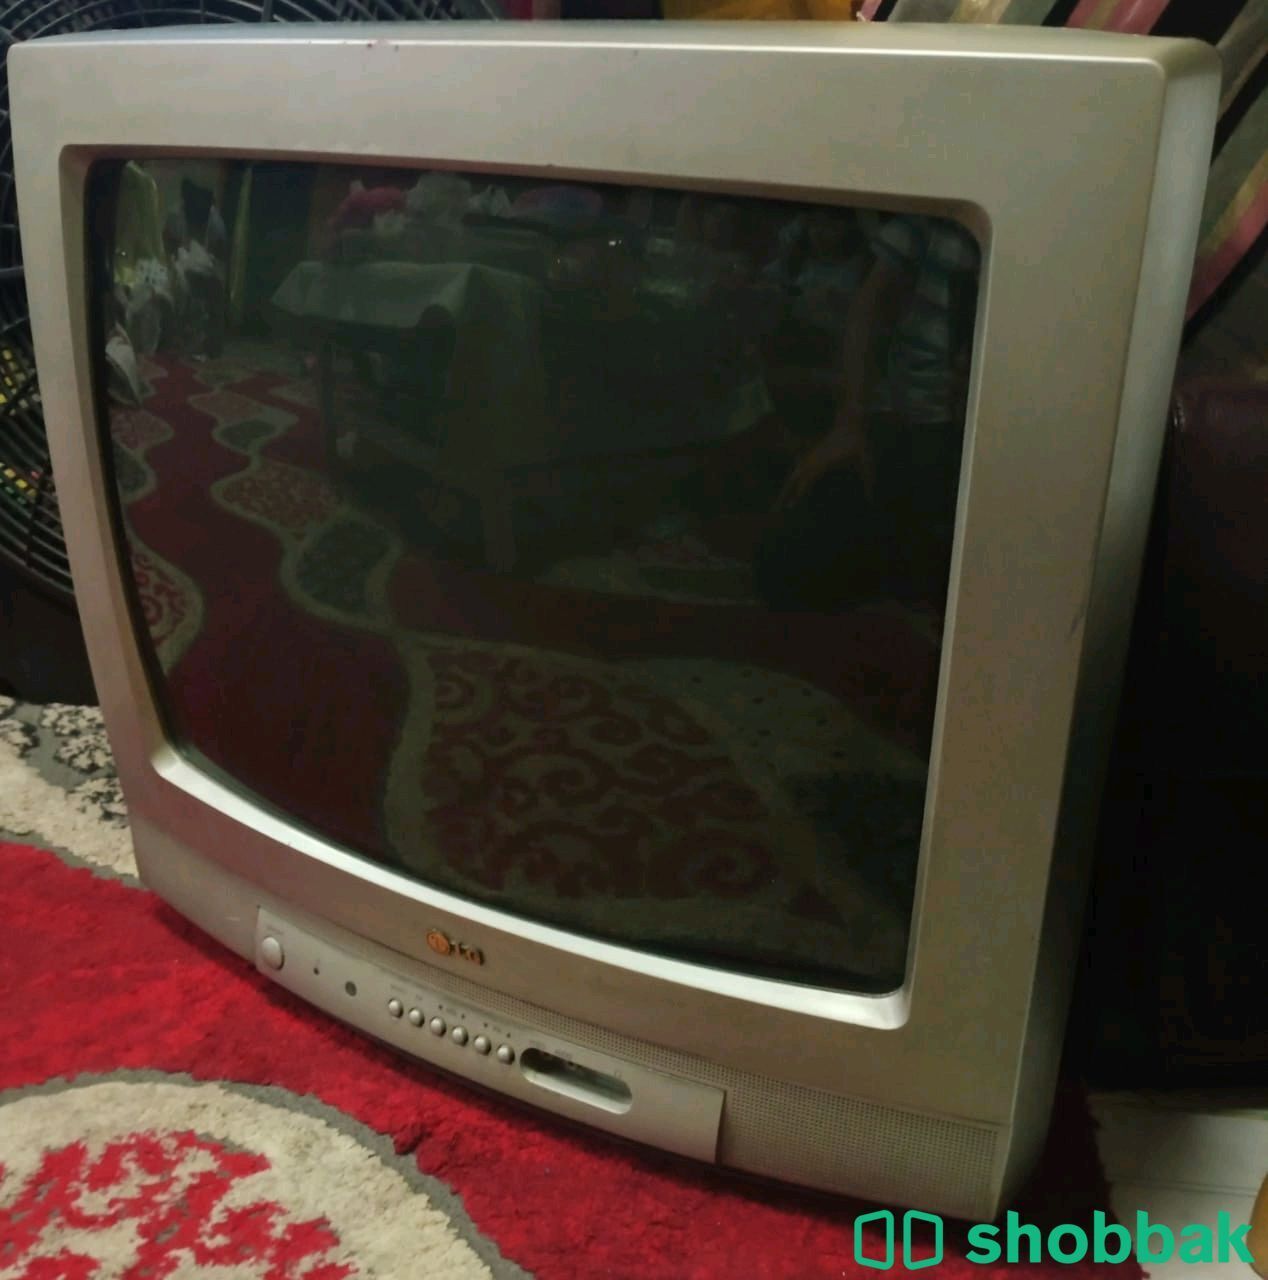 تلفزيون LG استخدام متوسط ب50ريال بـ الخرج Shobbak Saudi Arabia